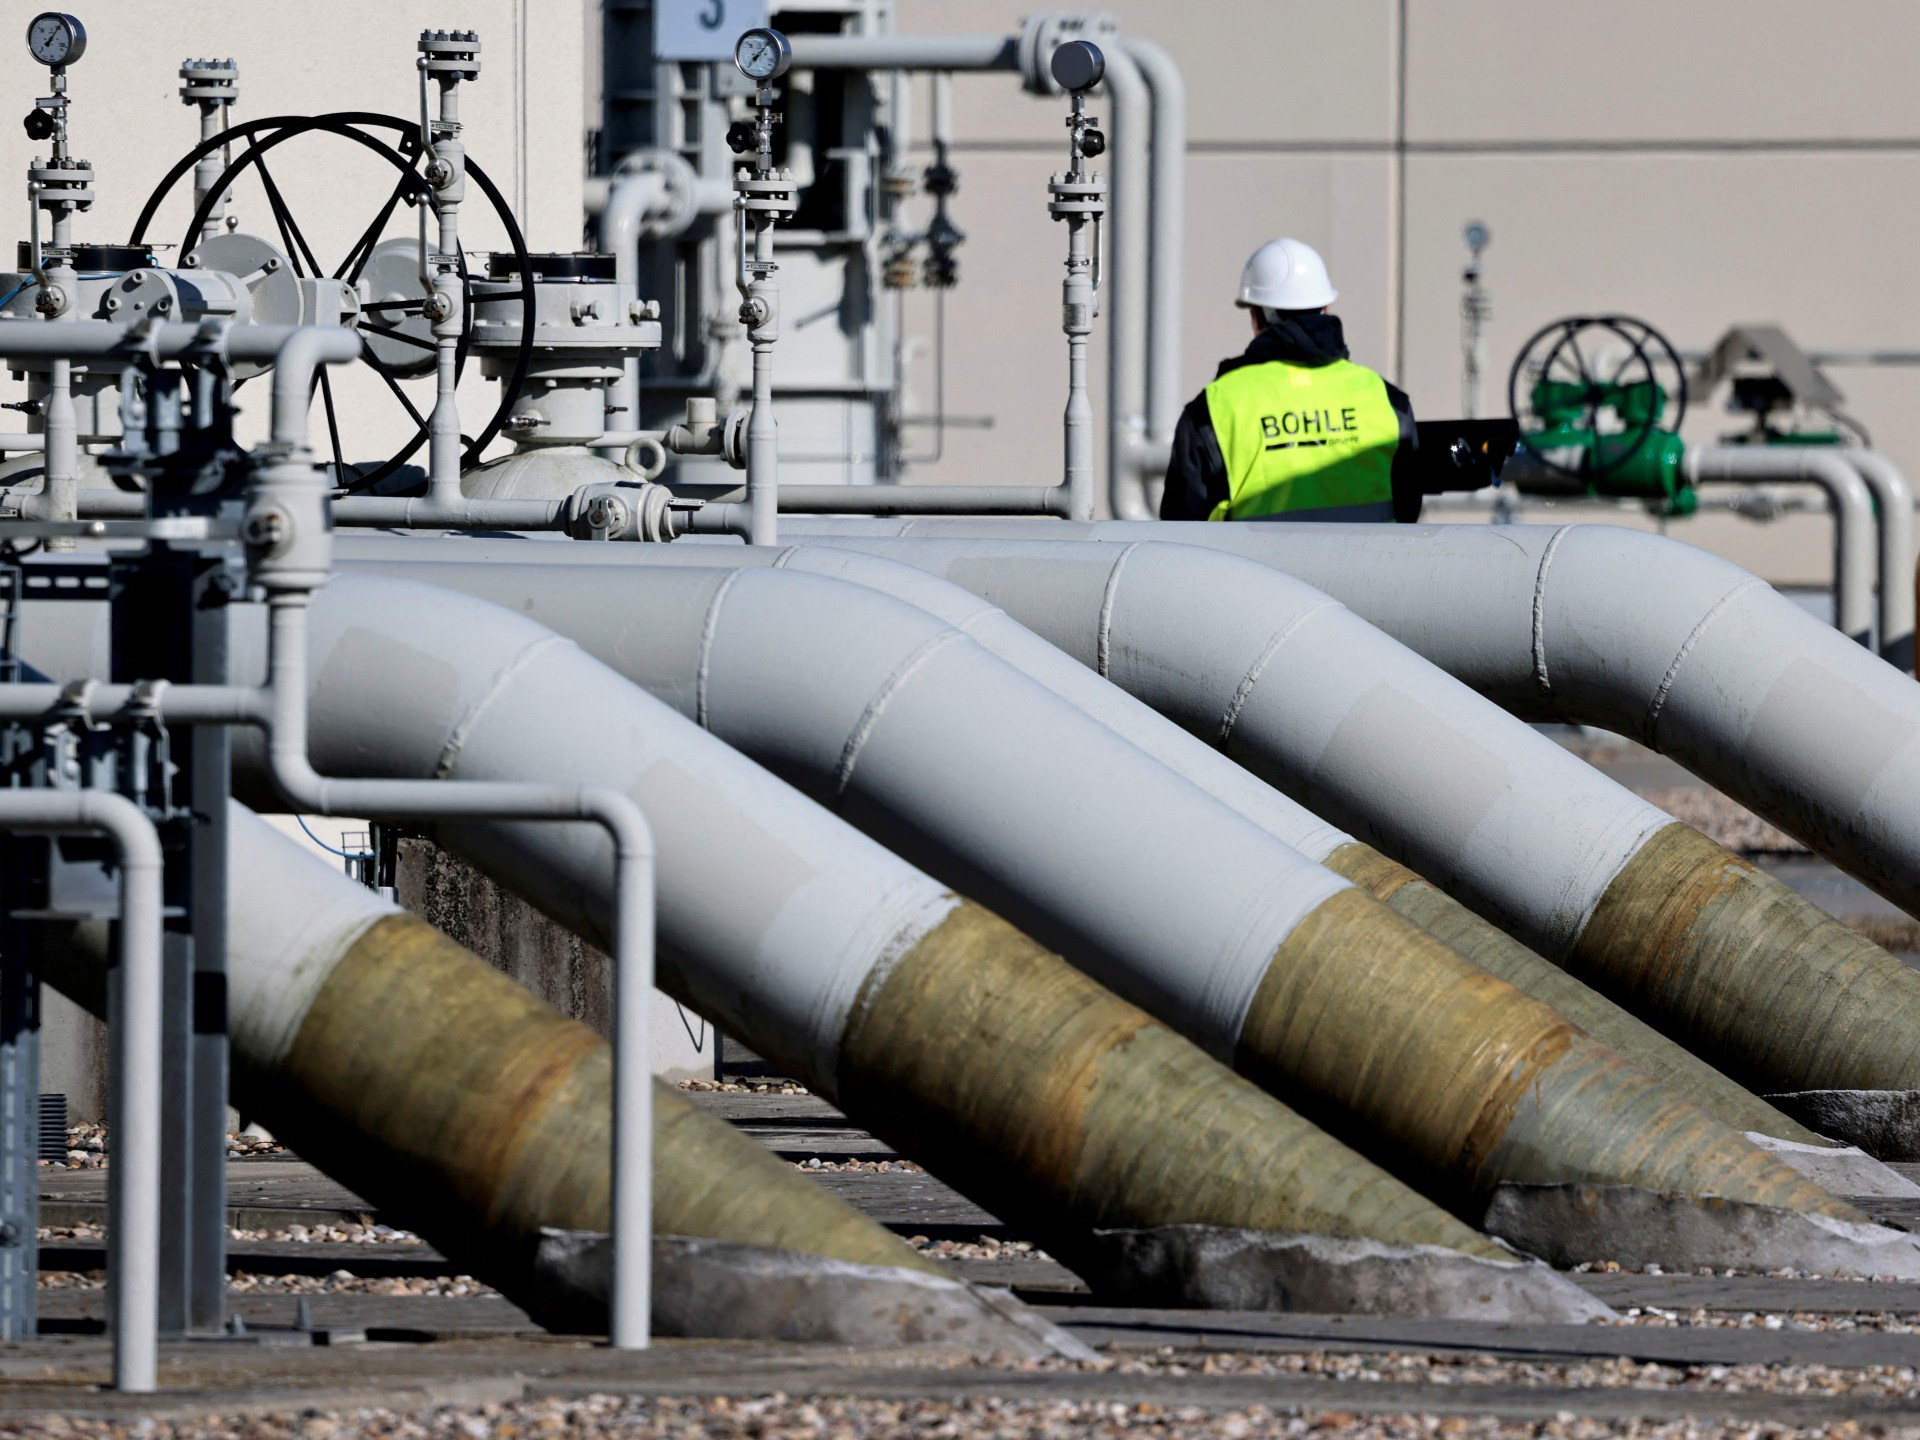 Berlim pede ligação de gás Espanha, Portugal e Europa |  Notícias de Petróleo e Gás